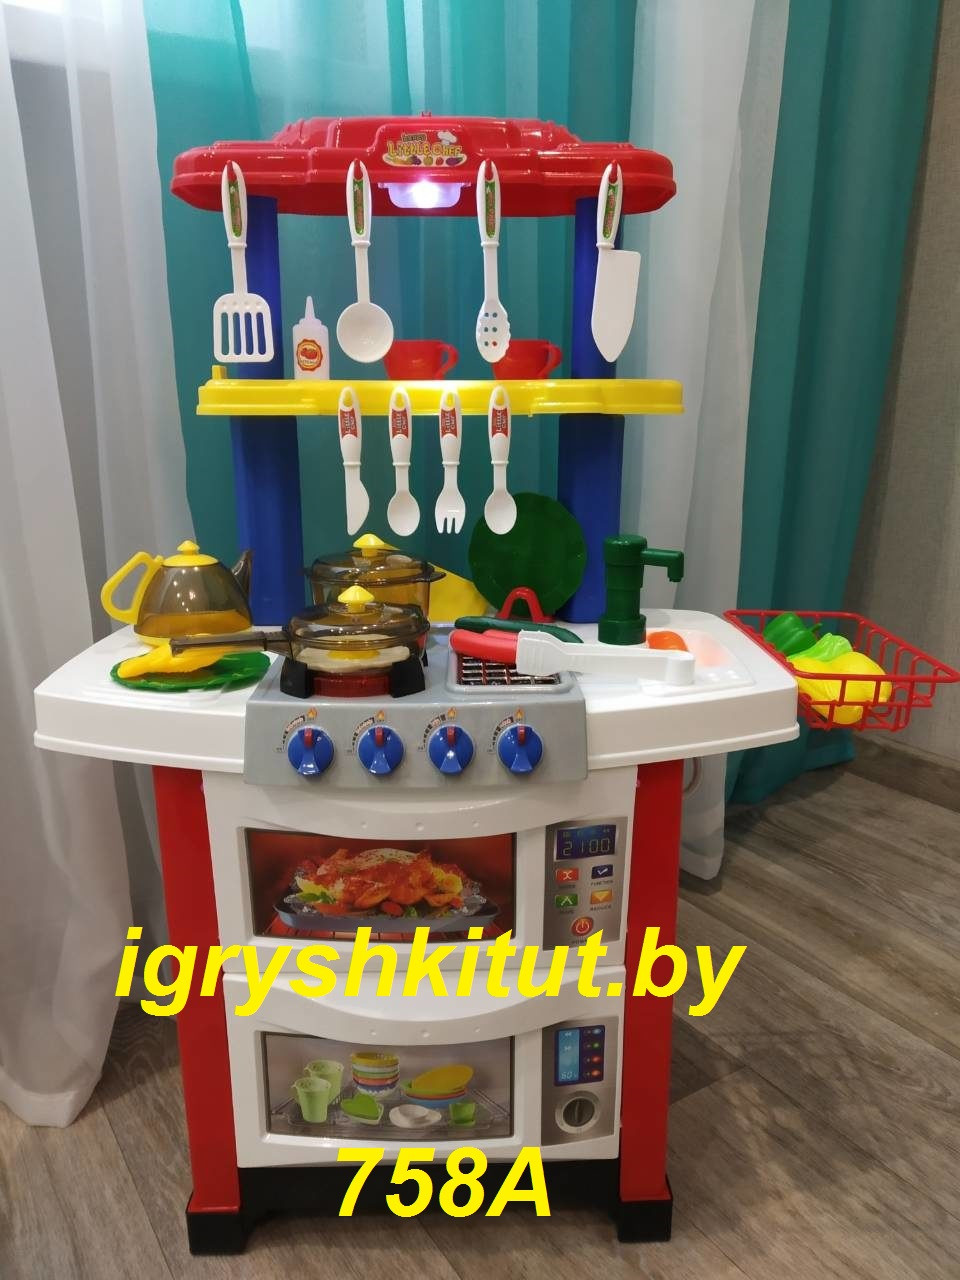 Кухня детская игровая с водой, светом и звуком высота 83 см  арт.758А, фото 1